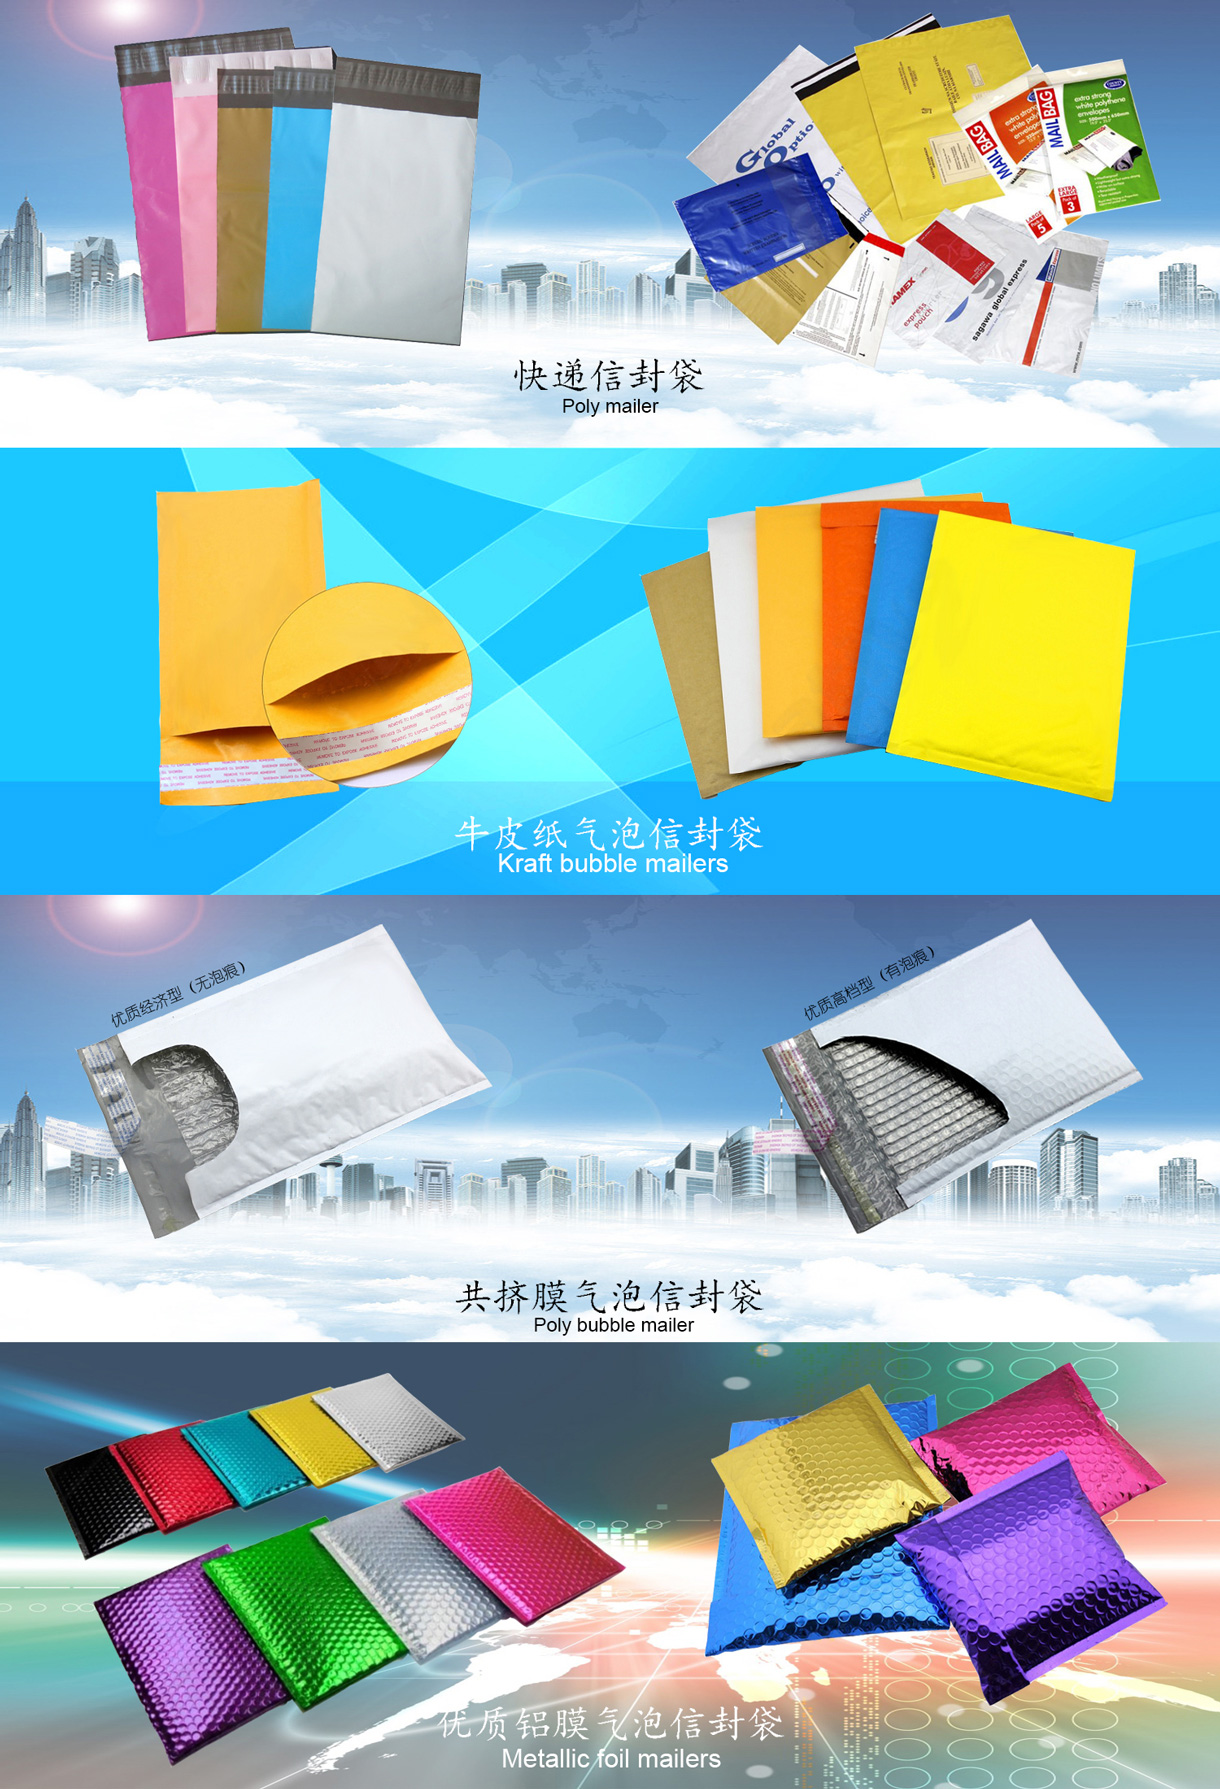 惠州邮邦包装制品有限公司-中国国际包装展-中国包装容器展